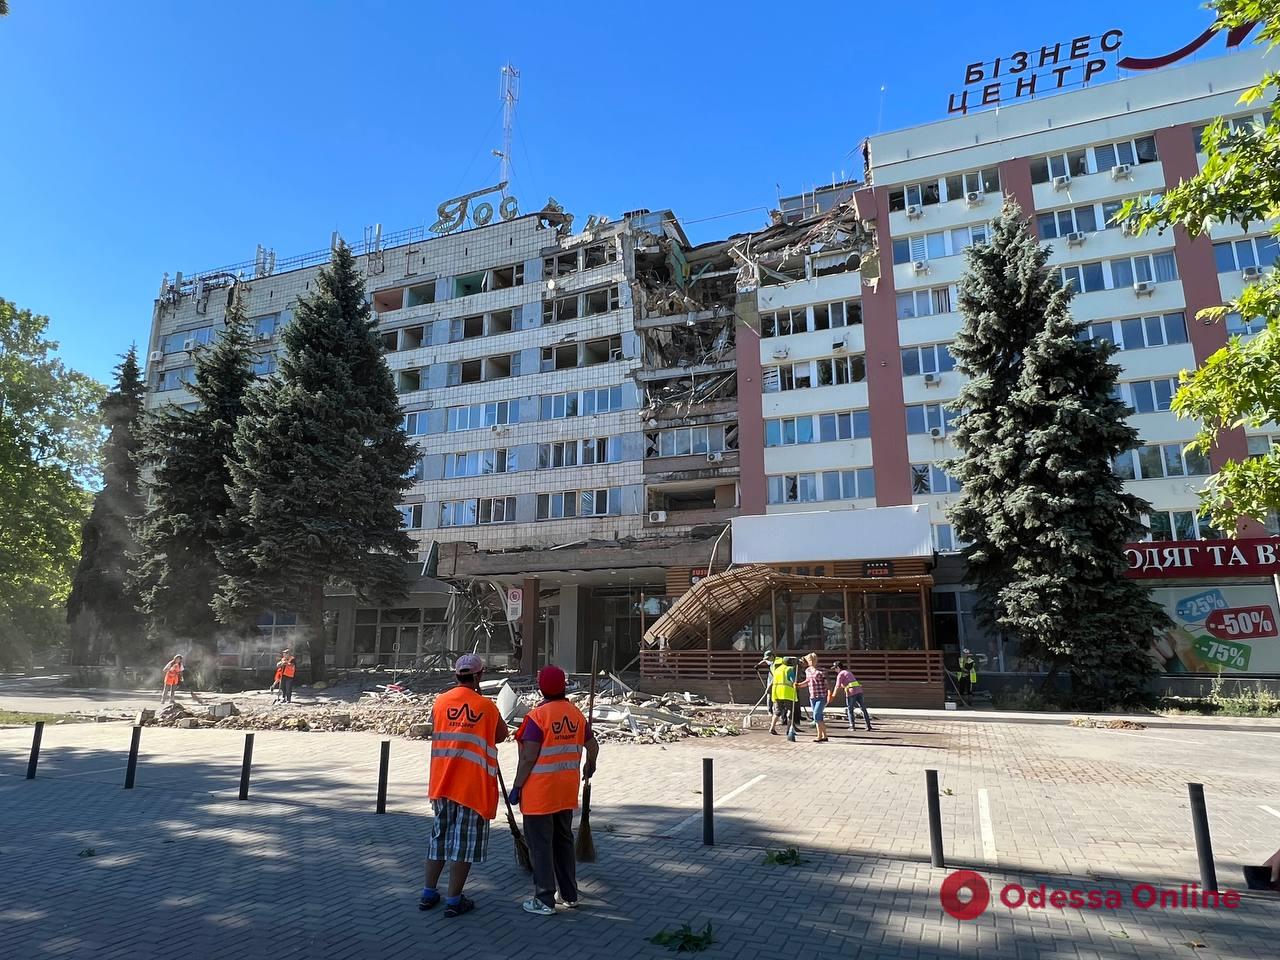 Николаев подвергся массированному ракетному обстрелу — повреждены учебные заведения, объект транспортной инфраструктуры и отель